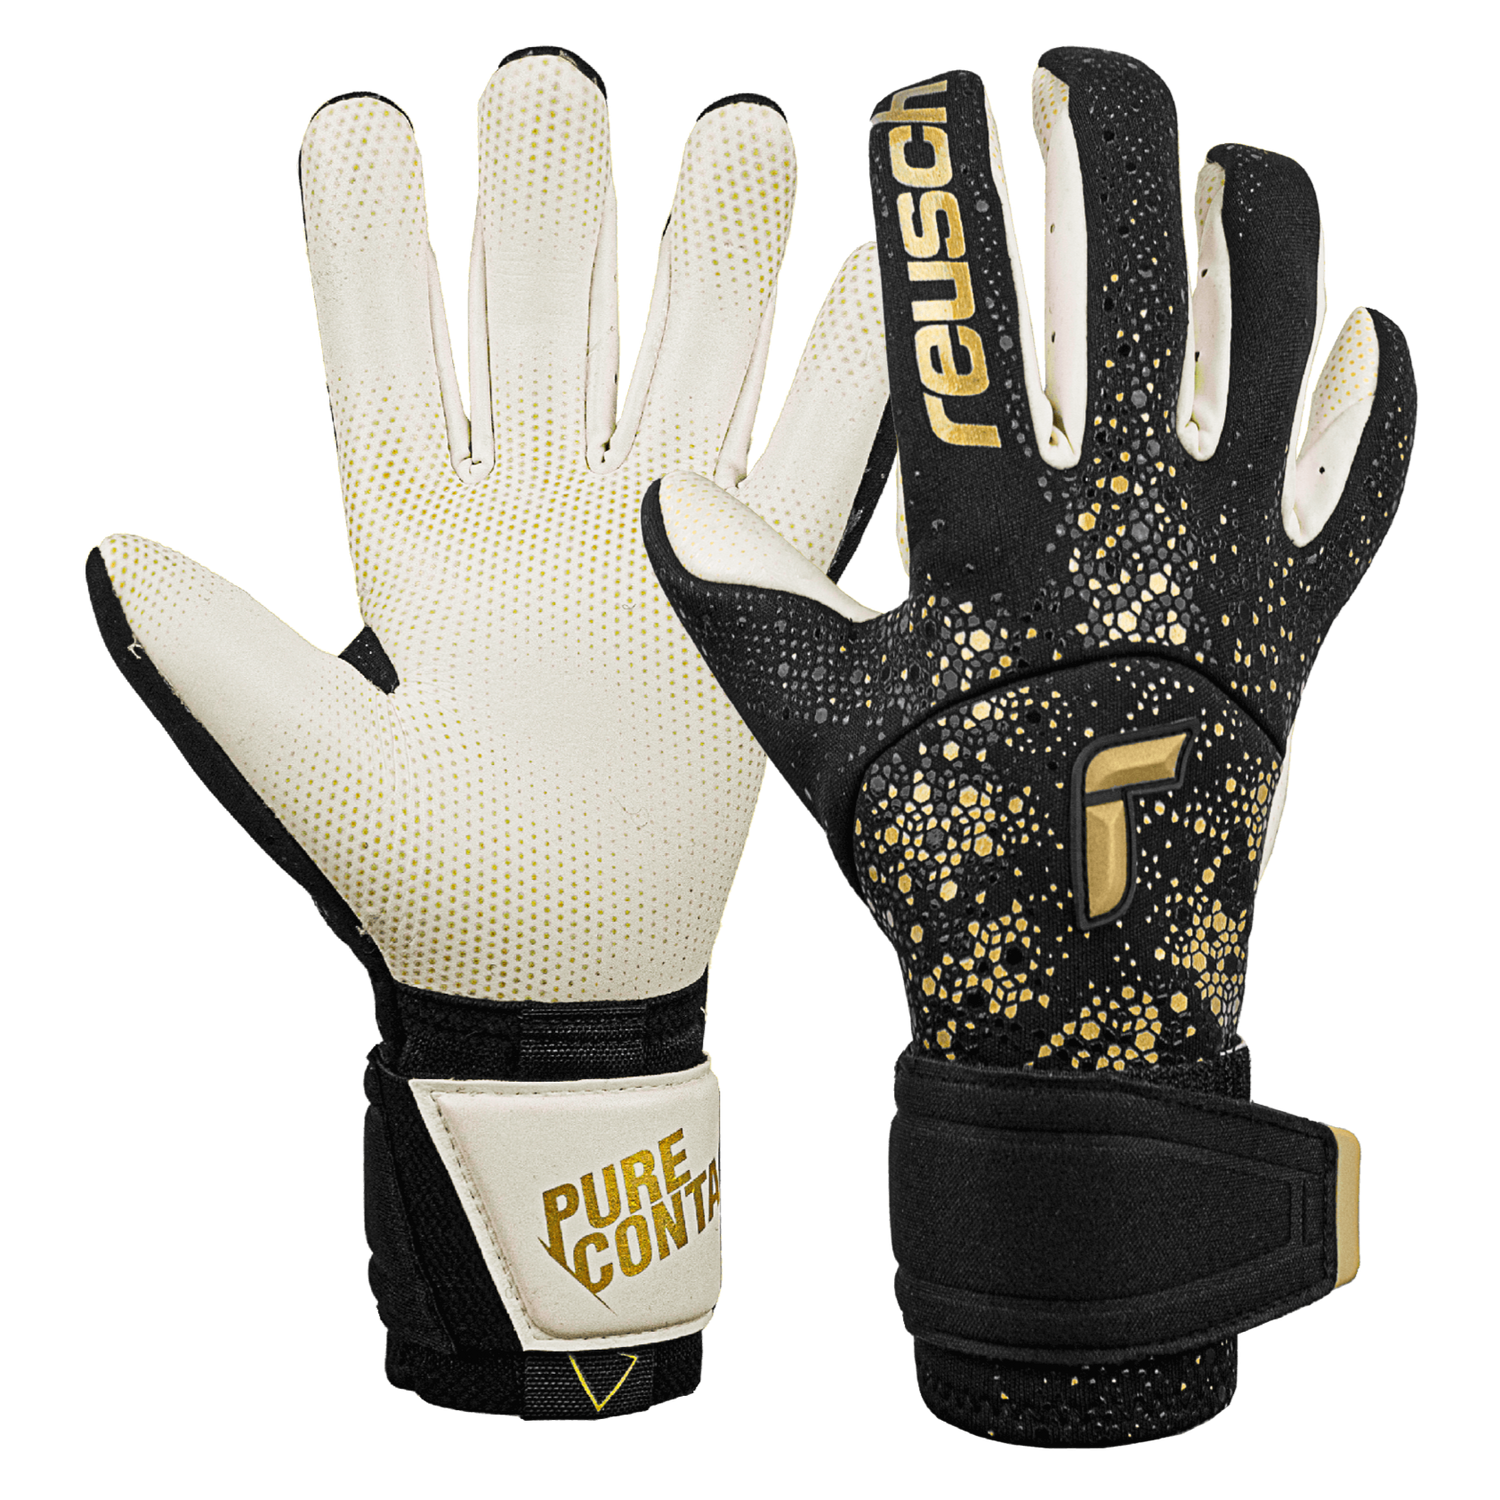 Reusch Pure Contact Gold X Glueprint Goalkeeper Gloves - Black-Gold